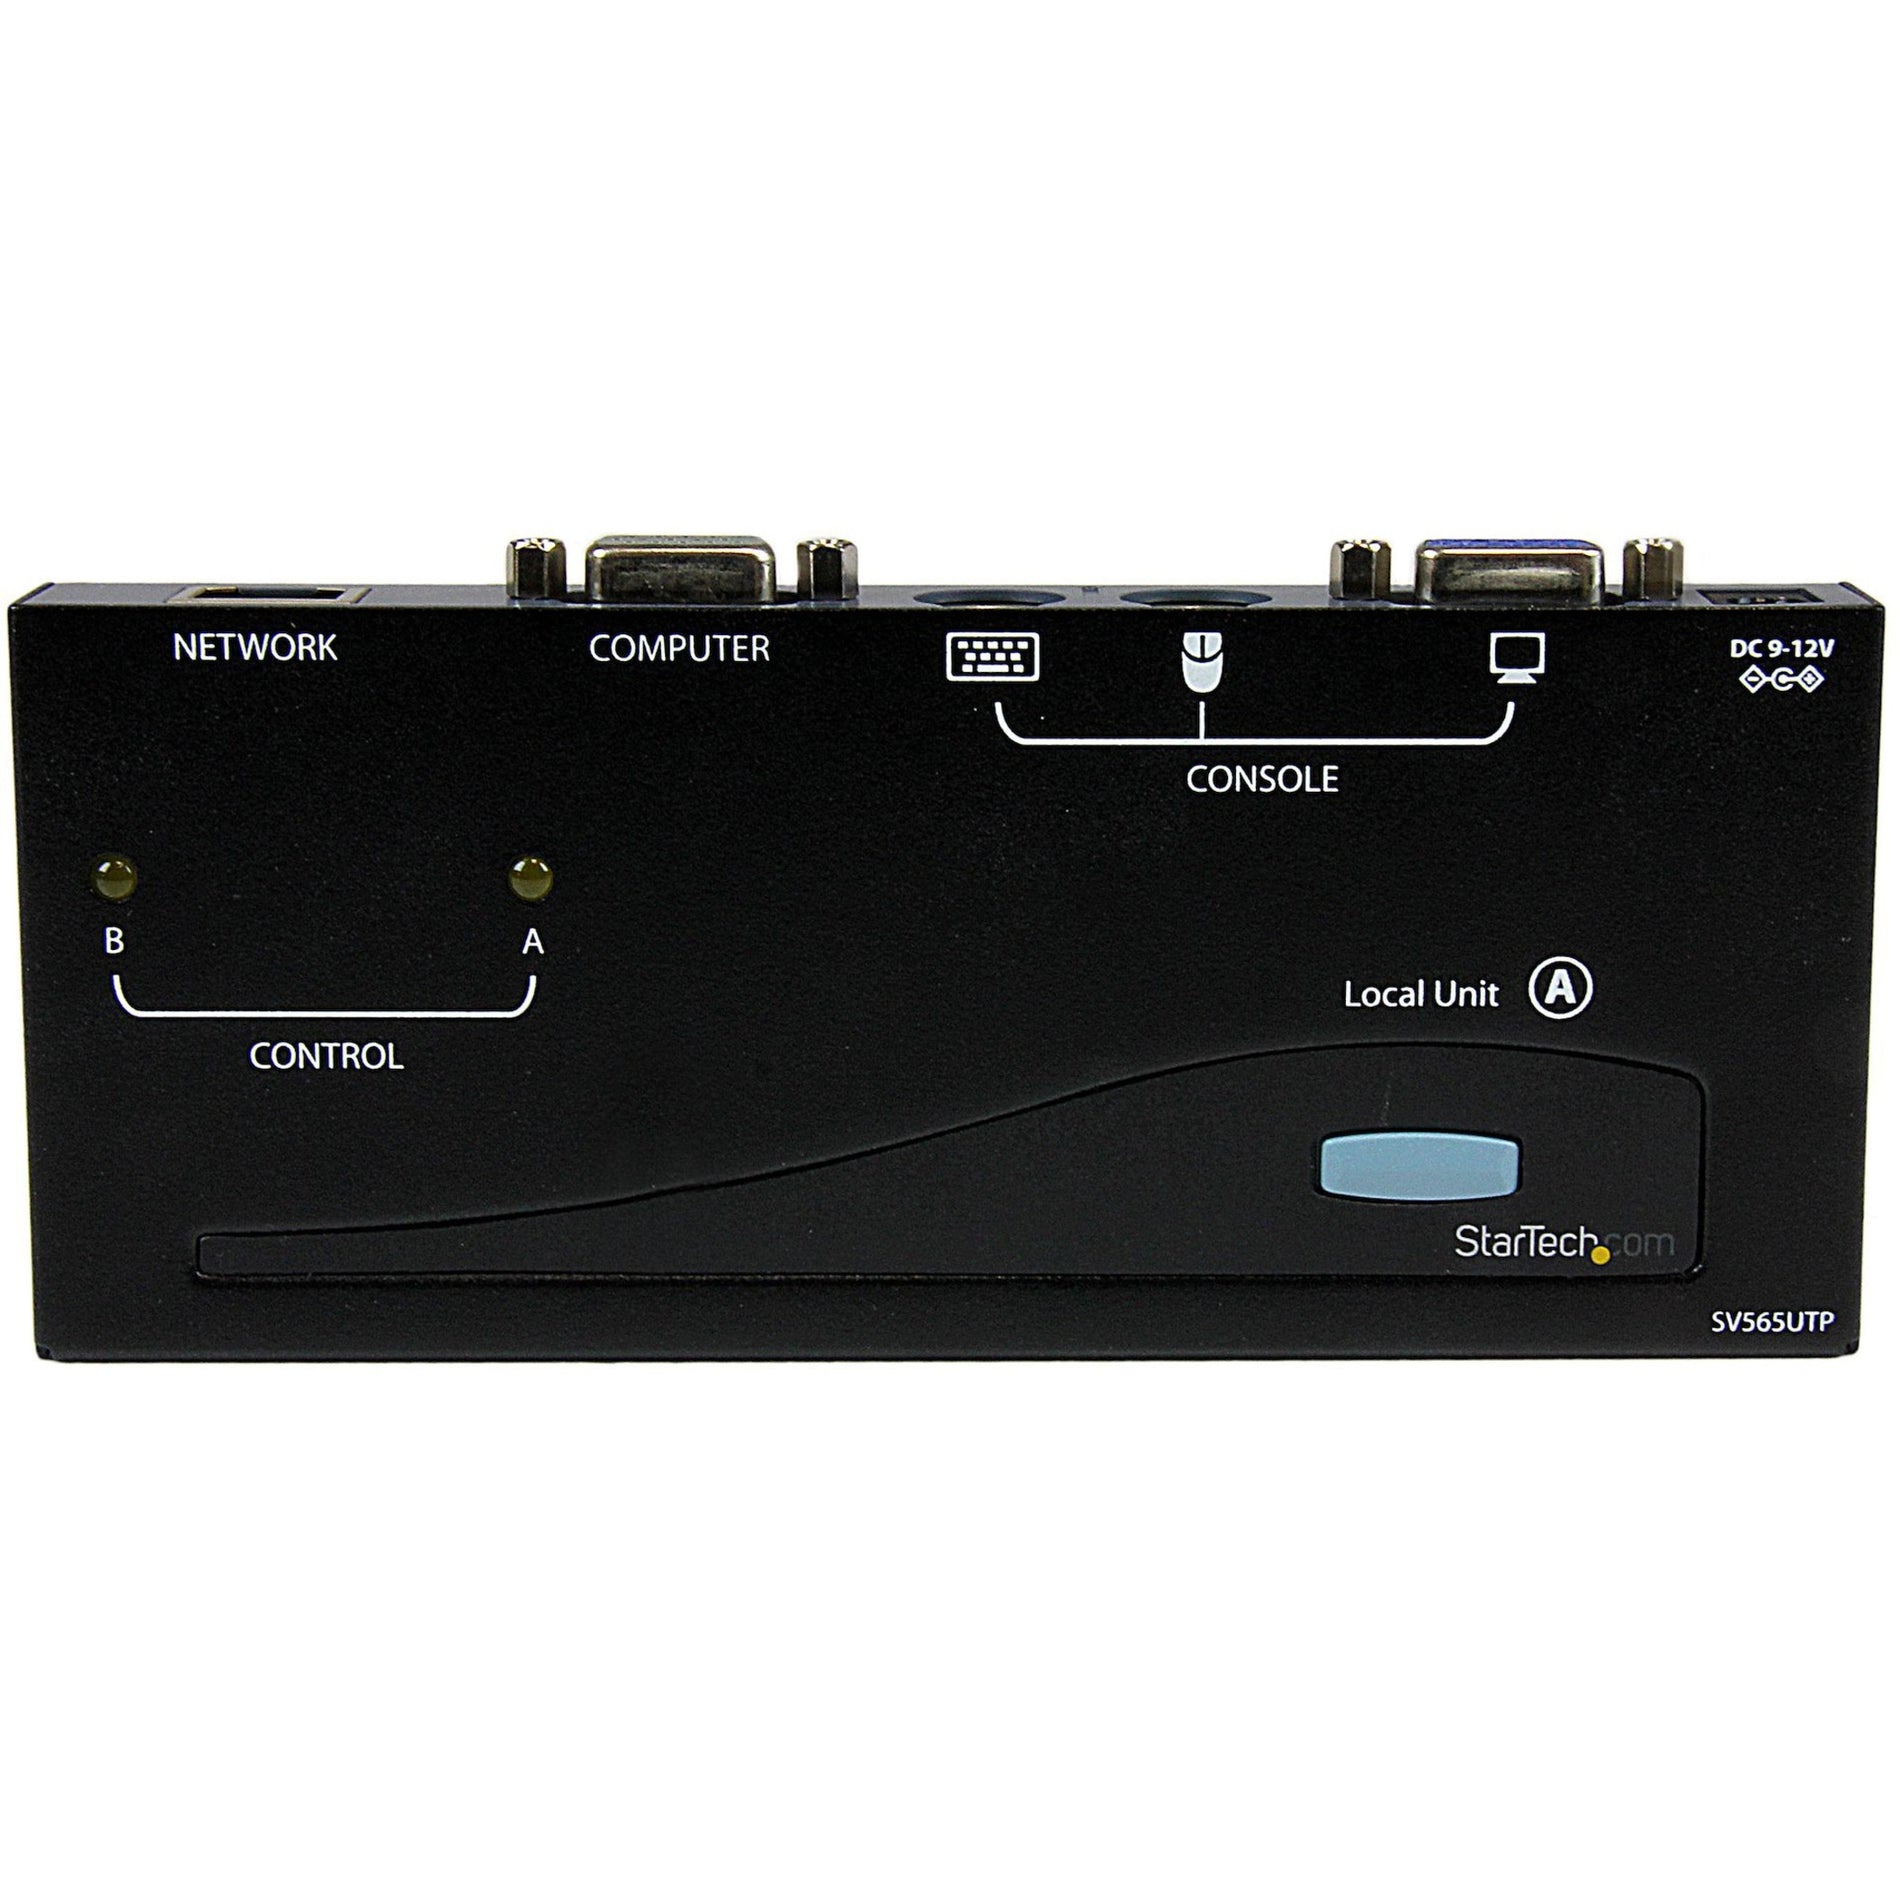 StarTech.com SV565UTP PS/2 USB KVM コンソールエクステンダー、VGA、1024 x 768、2 年保証、TAA 準拠、500 ft (150M) 販売終了 StarTech.comをスターテック・ドットコムとして翻訳します。